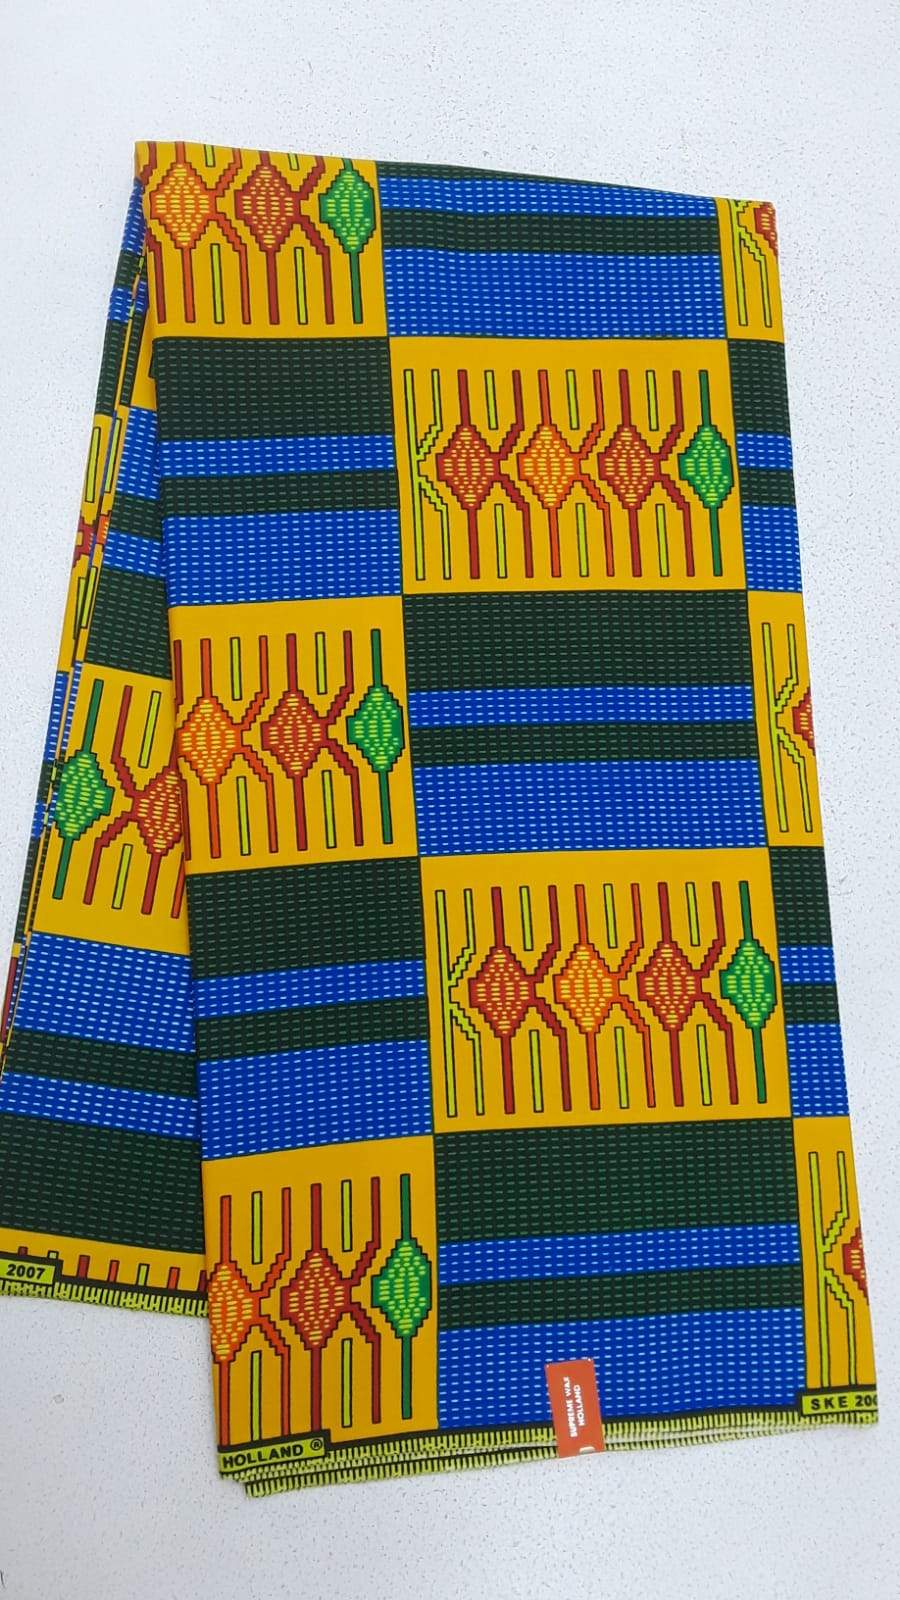 Yellow & Blue Body Unique Designed Original Kente Fabrics